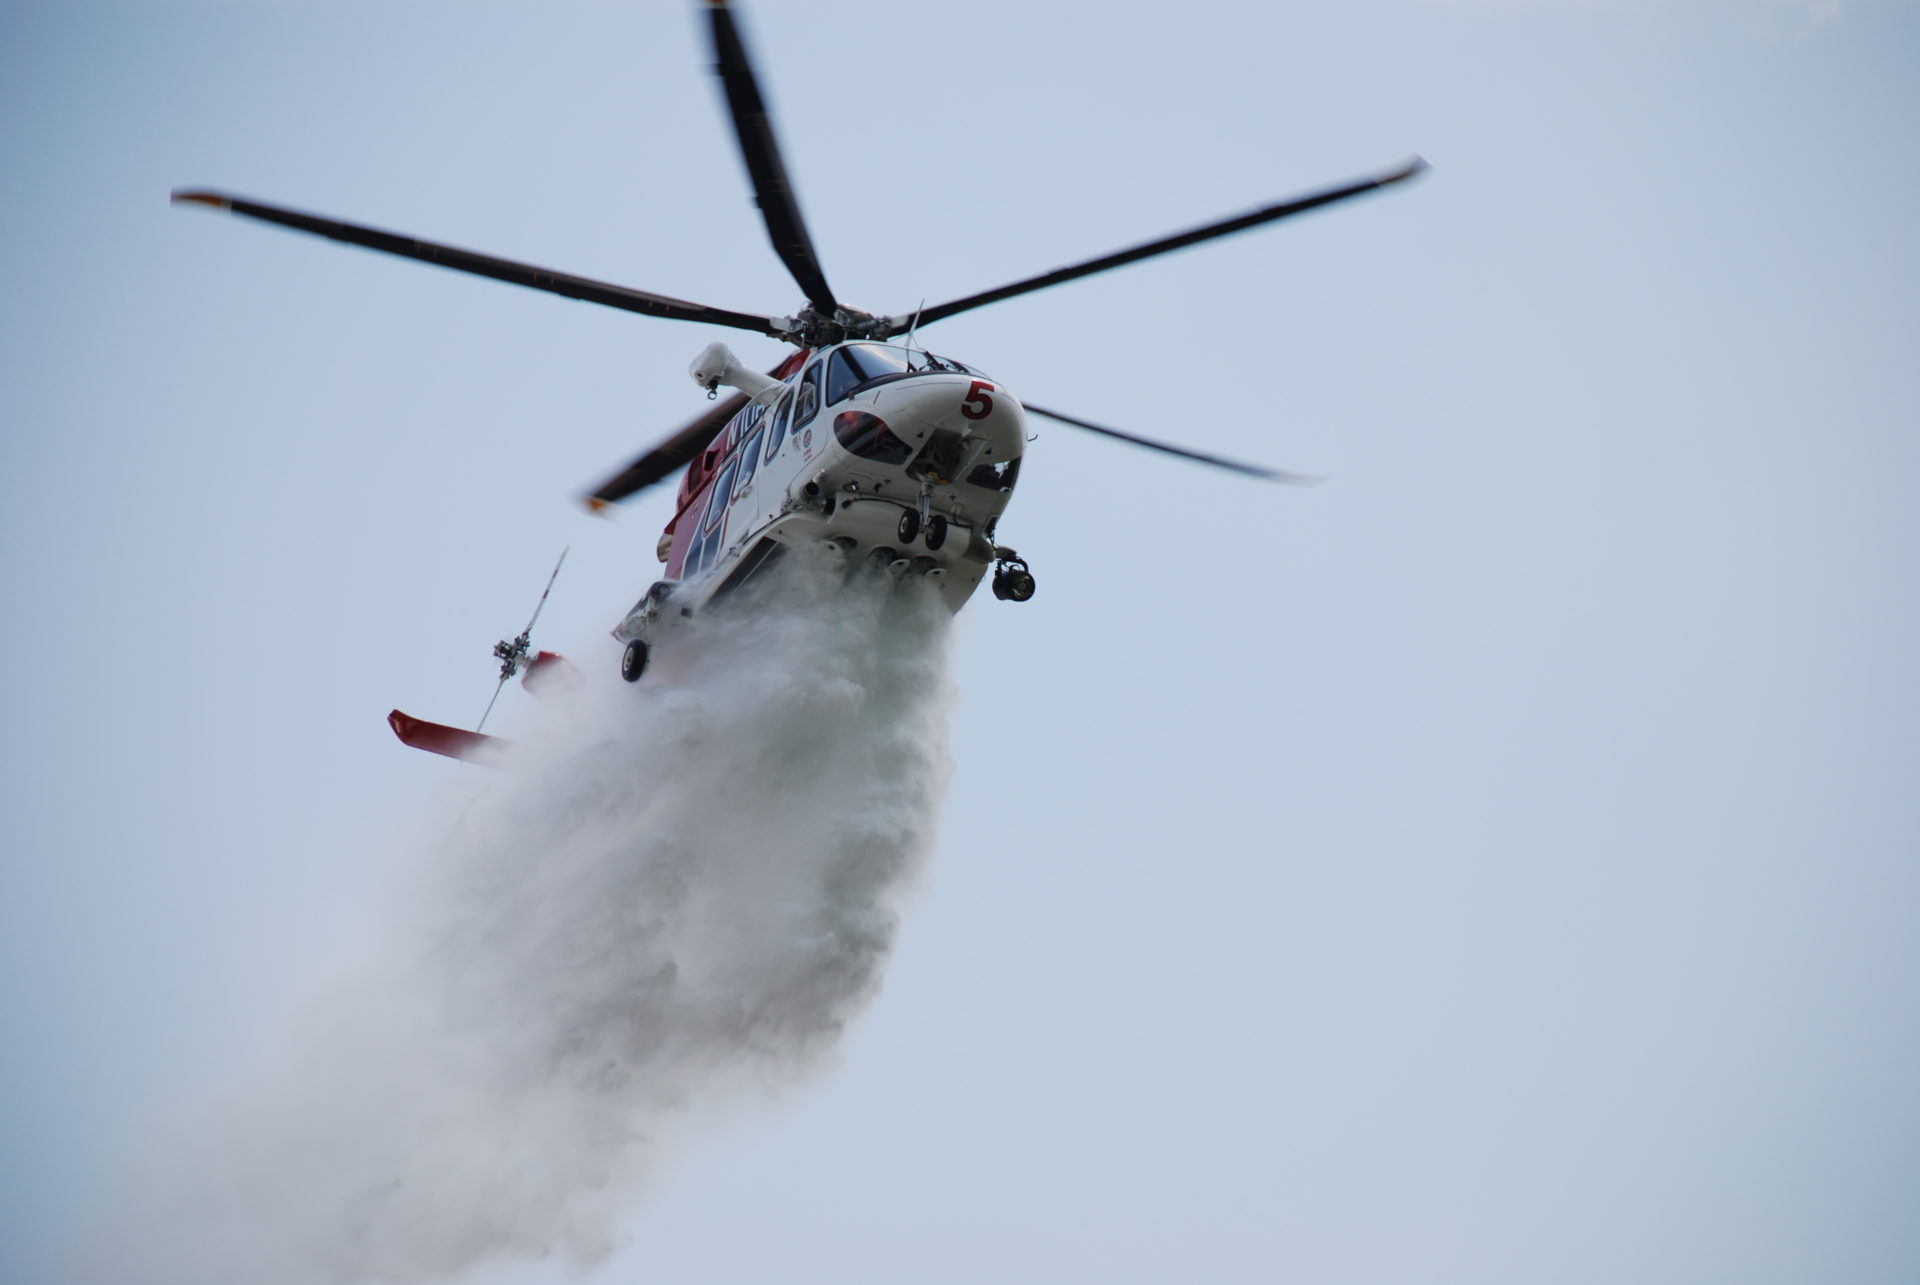 Leonardo: la consegna del quinto elicottero AW139 è prevista nella primavera del 2019 per missioni antincendio e di soccorso.